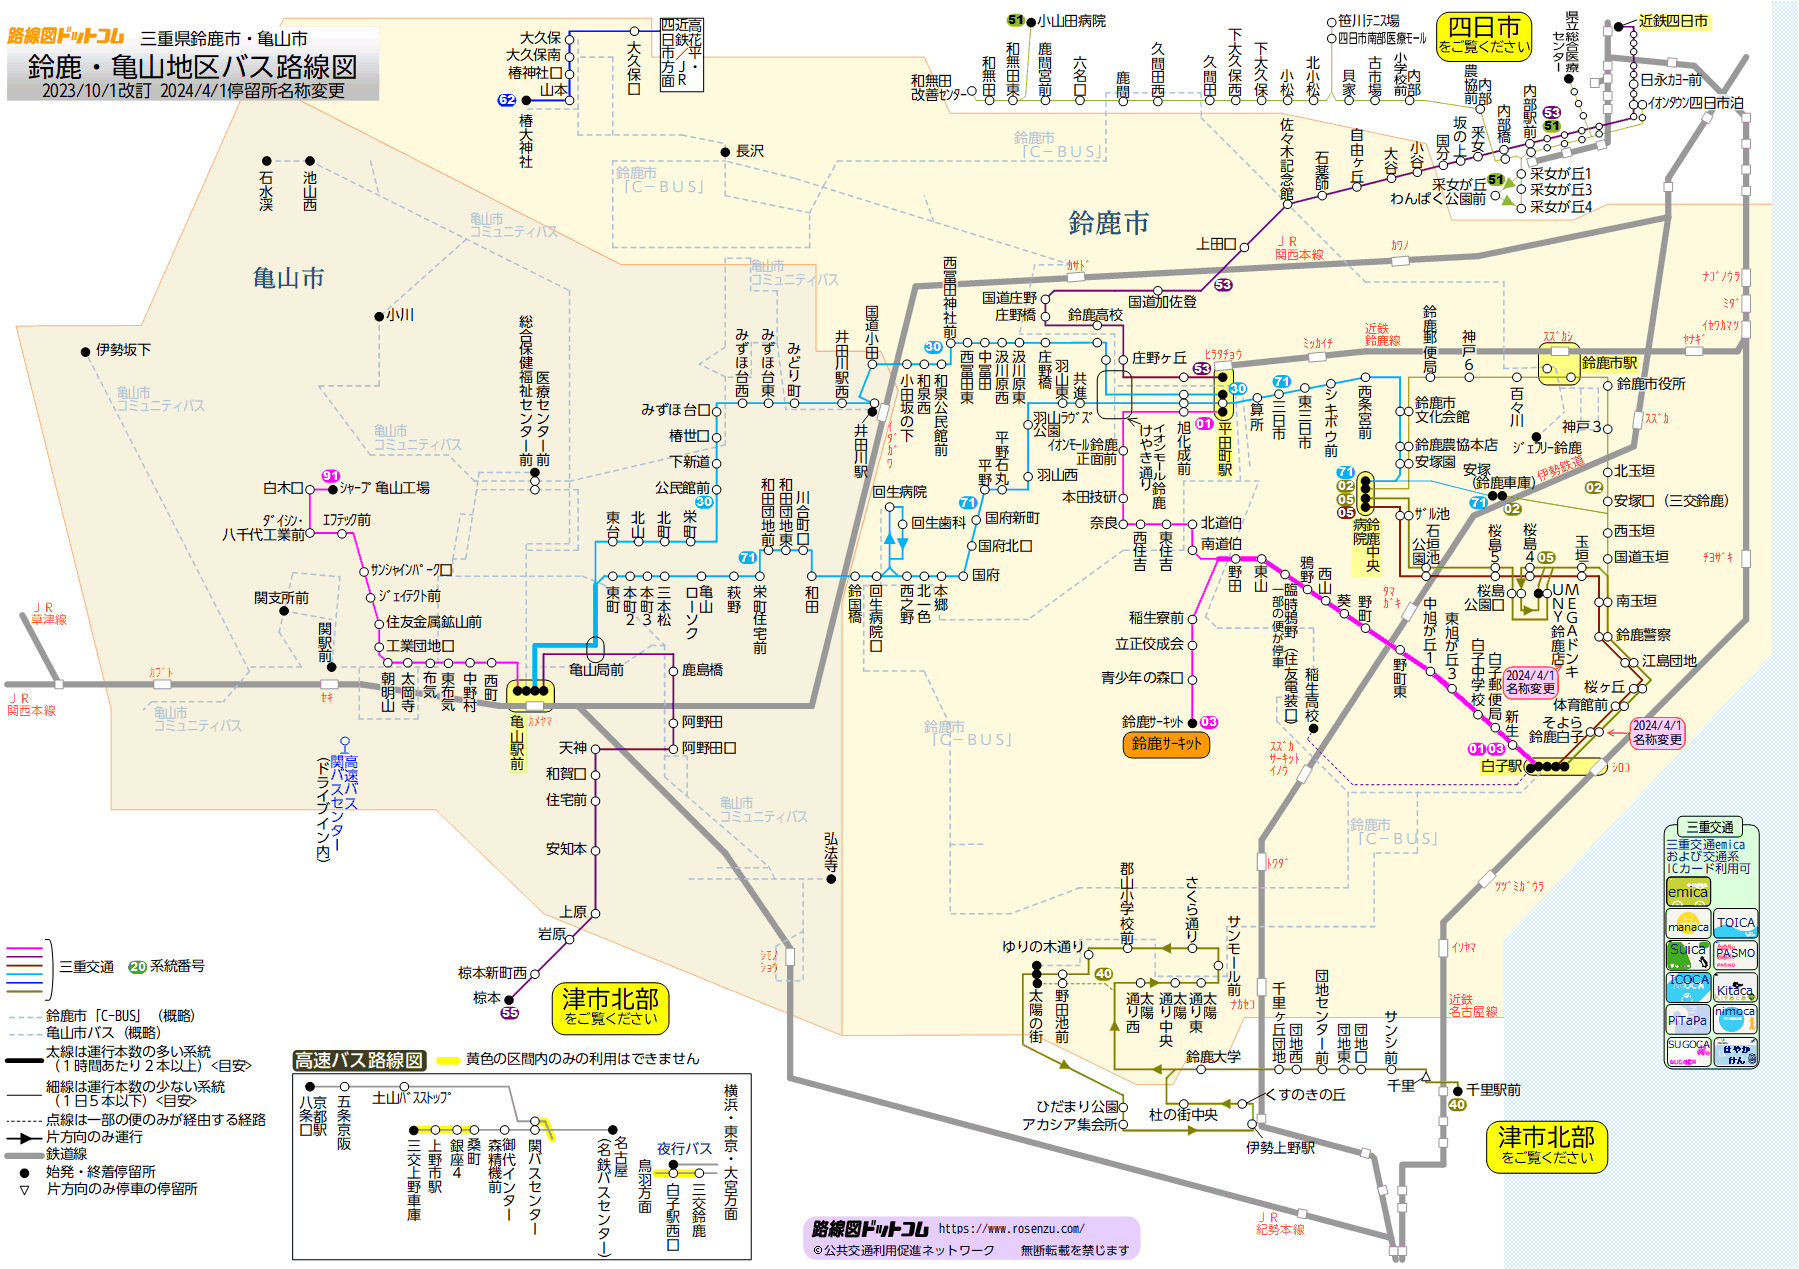 鈴鹿・亀山地区バス路線図